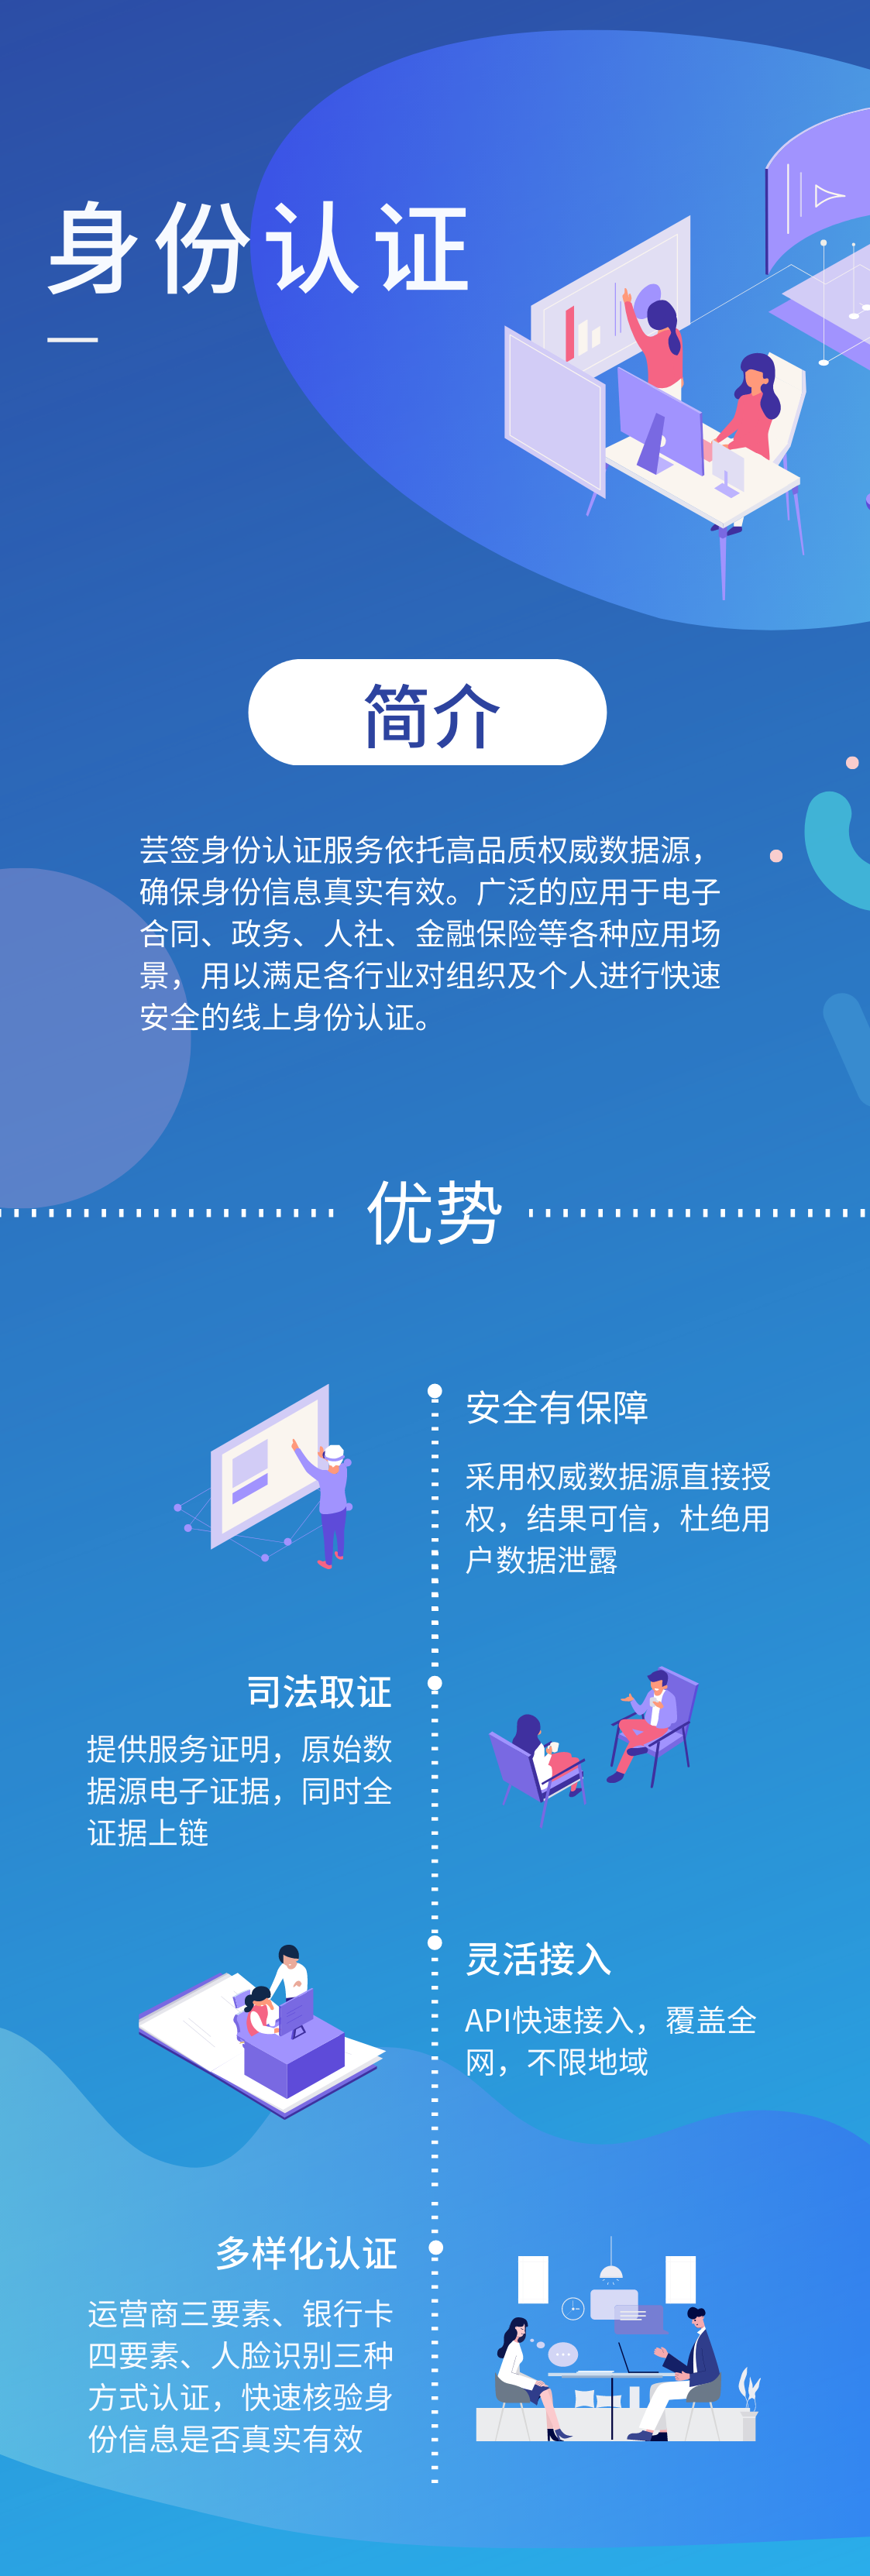 蓝白色国考简约现代几何简洁国考教育分享中文课程表 (1).png